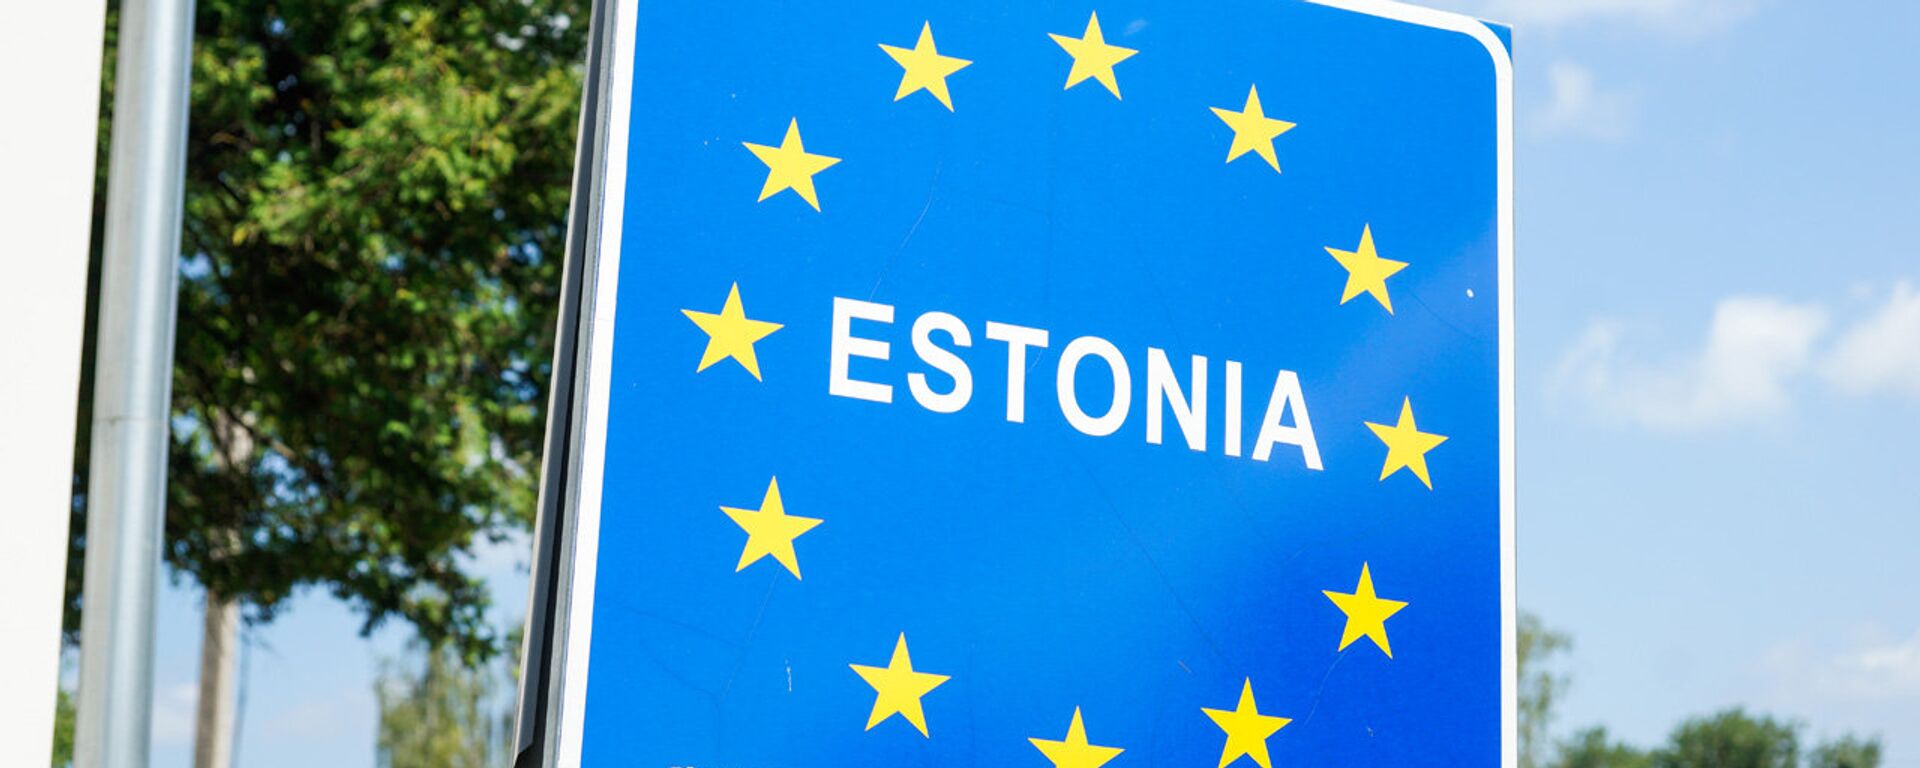 Дорожный знак Эстония на границе - Sputnik Латвия, 1920, 08.08.2021